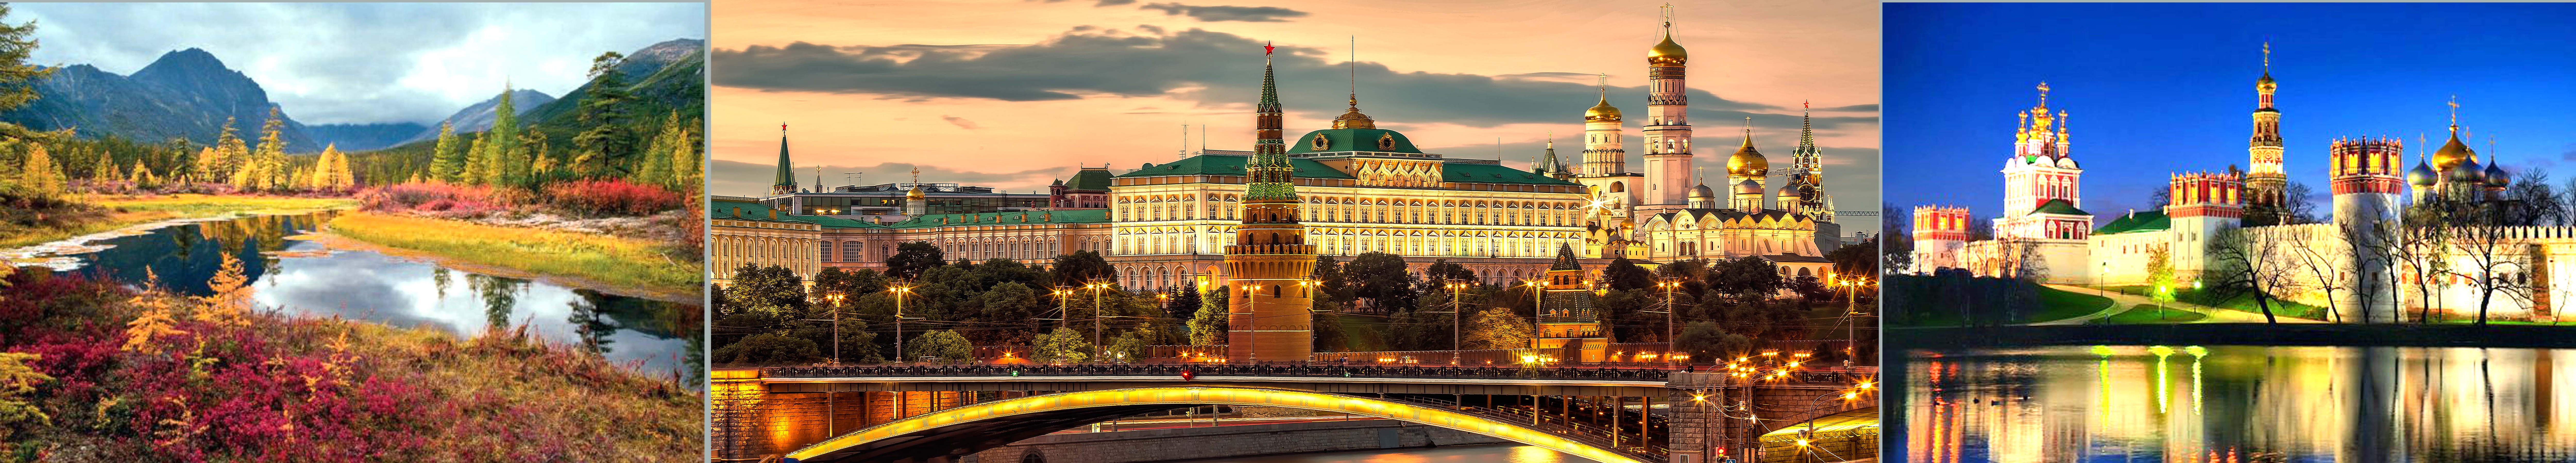 Rusiya Moskova. Kremlin nehir kənarı - Rusça uzman çeviri hizmeti